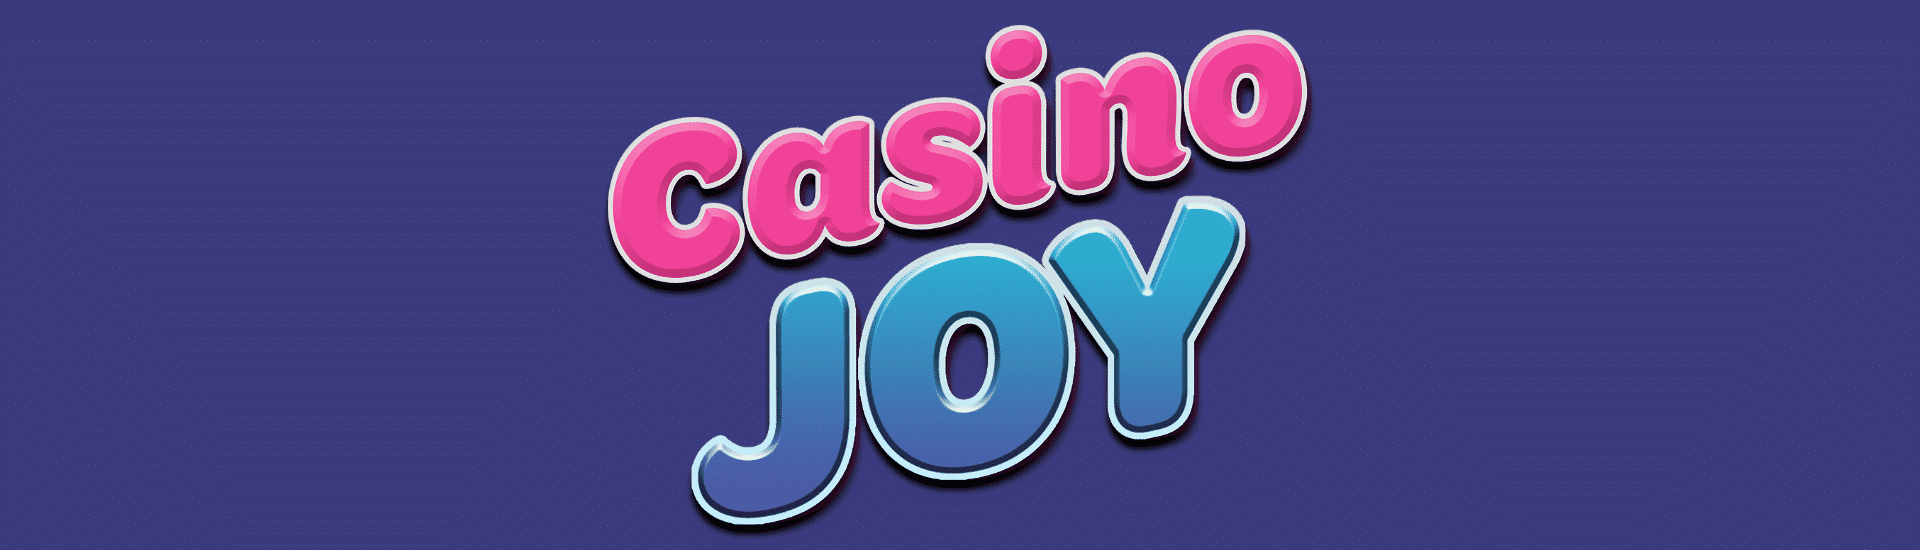 david joy casino